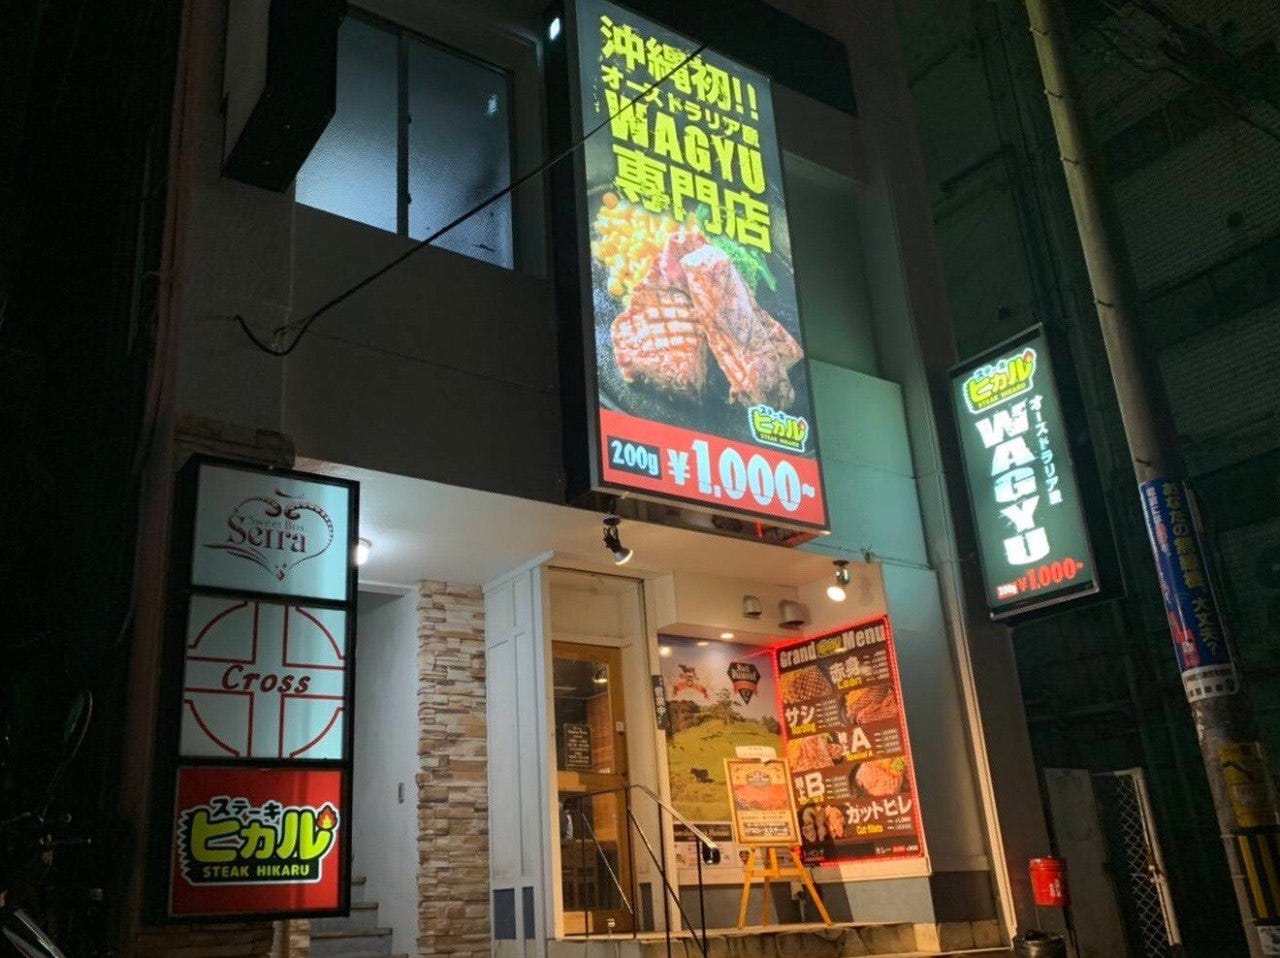 肉の旨味を楽しみ尽くせる！沖縄のおすすめステーキランキングTOP15の画像